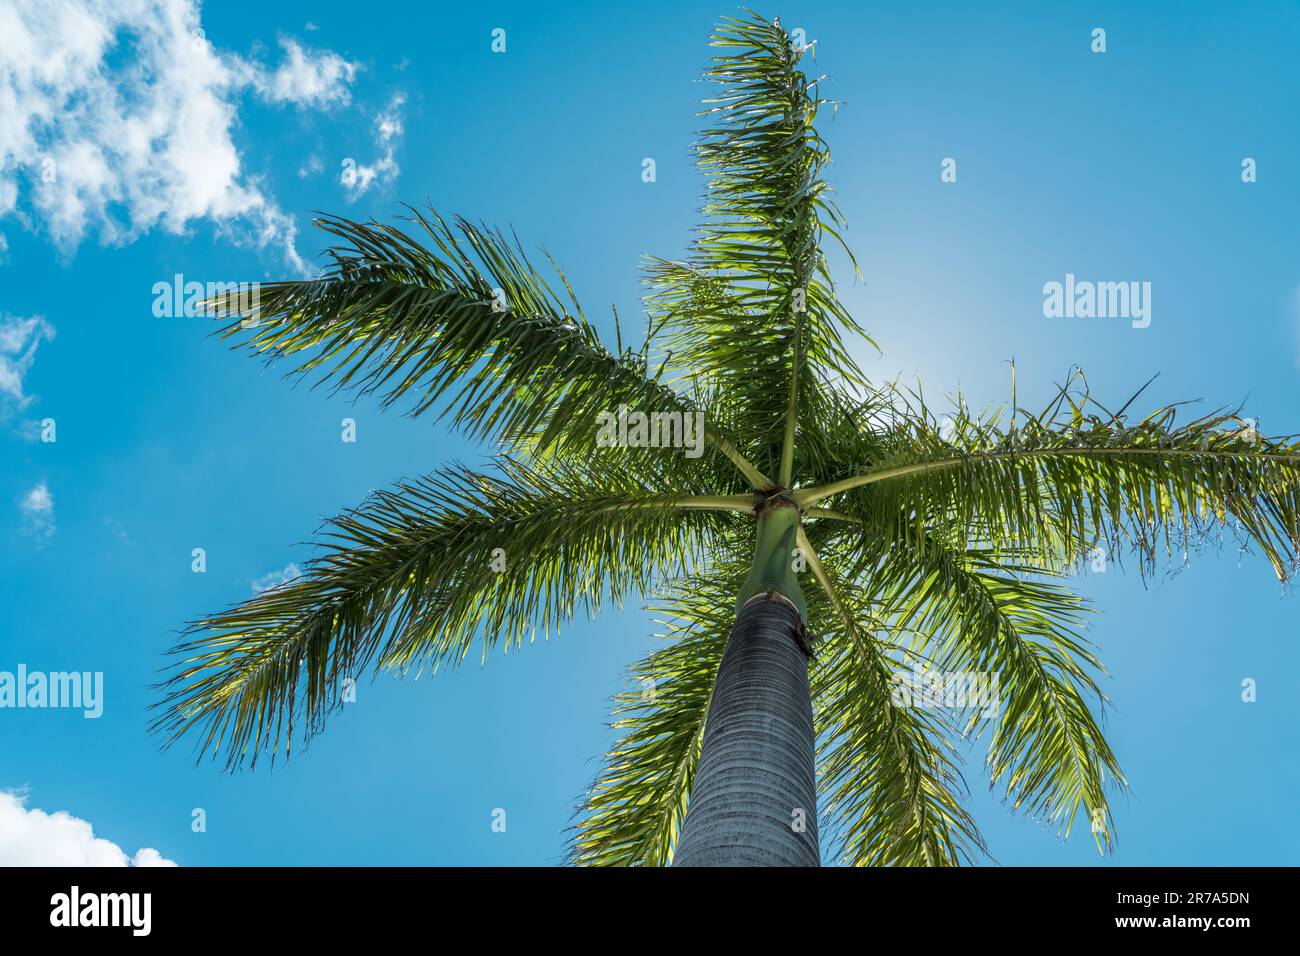 Une image d'un magnifique palmier tropical silhoueté sur un ciel bleu vif avec des nuages blancs et wispy, illuminé par le soleil doré Banque D'Images